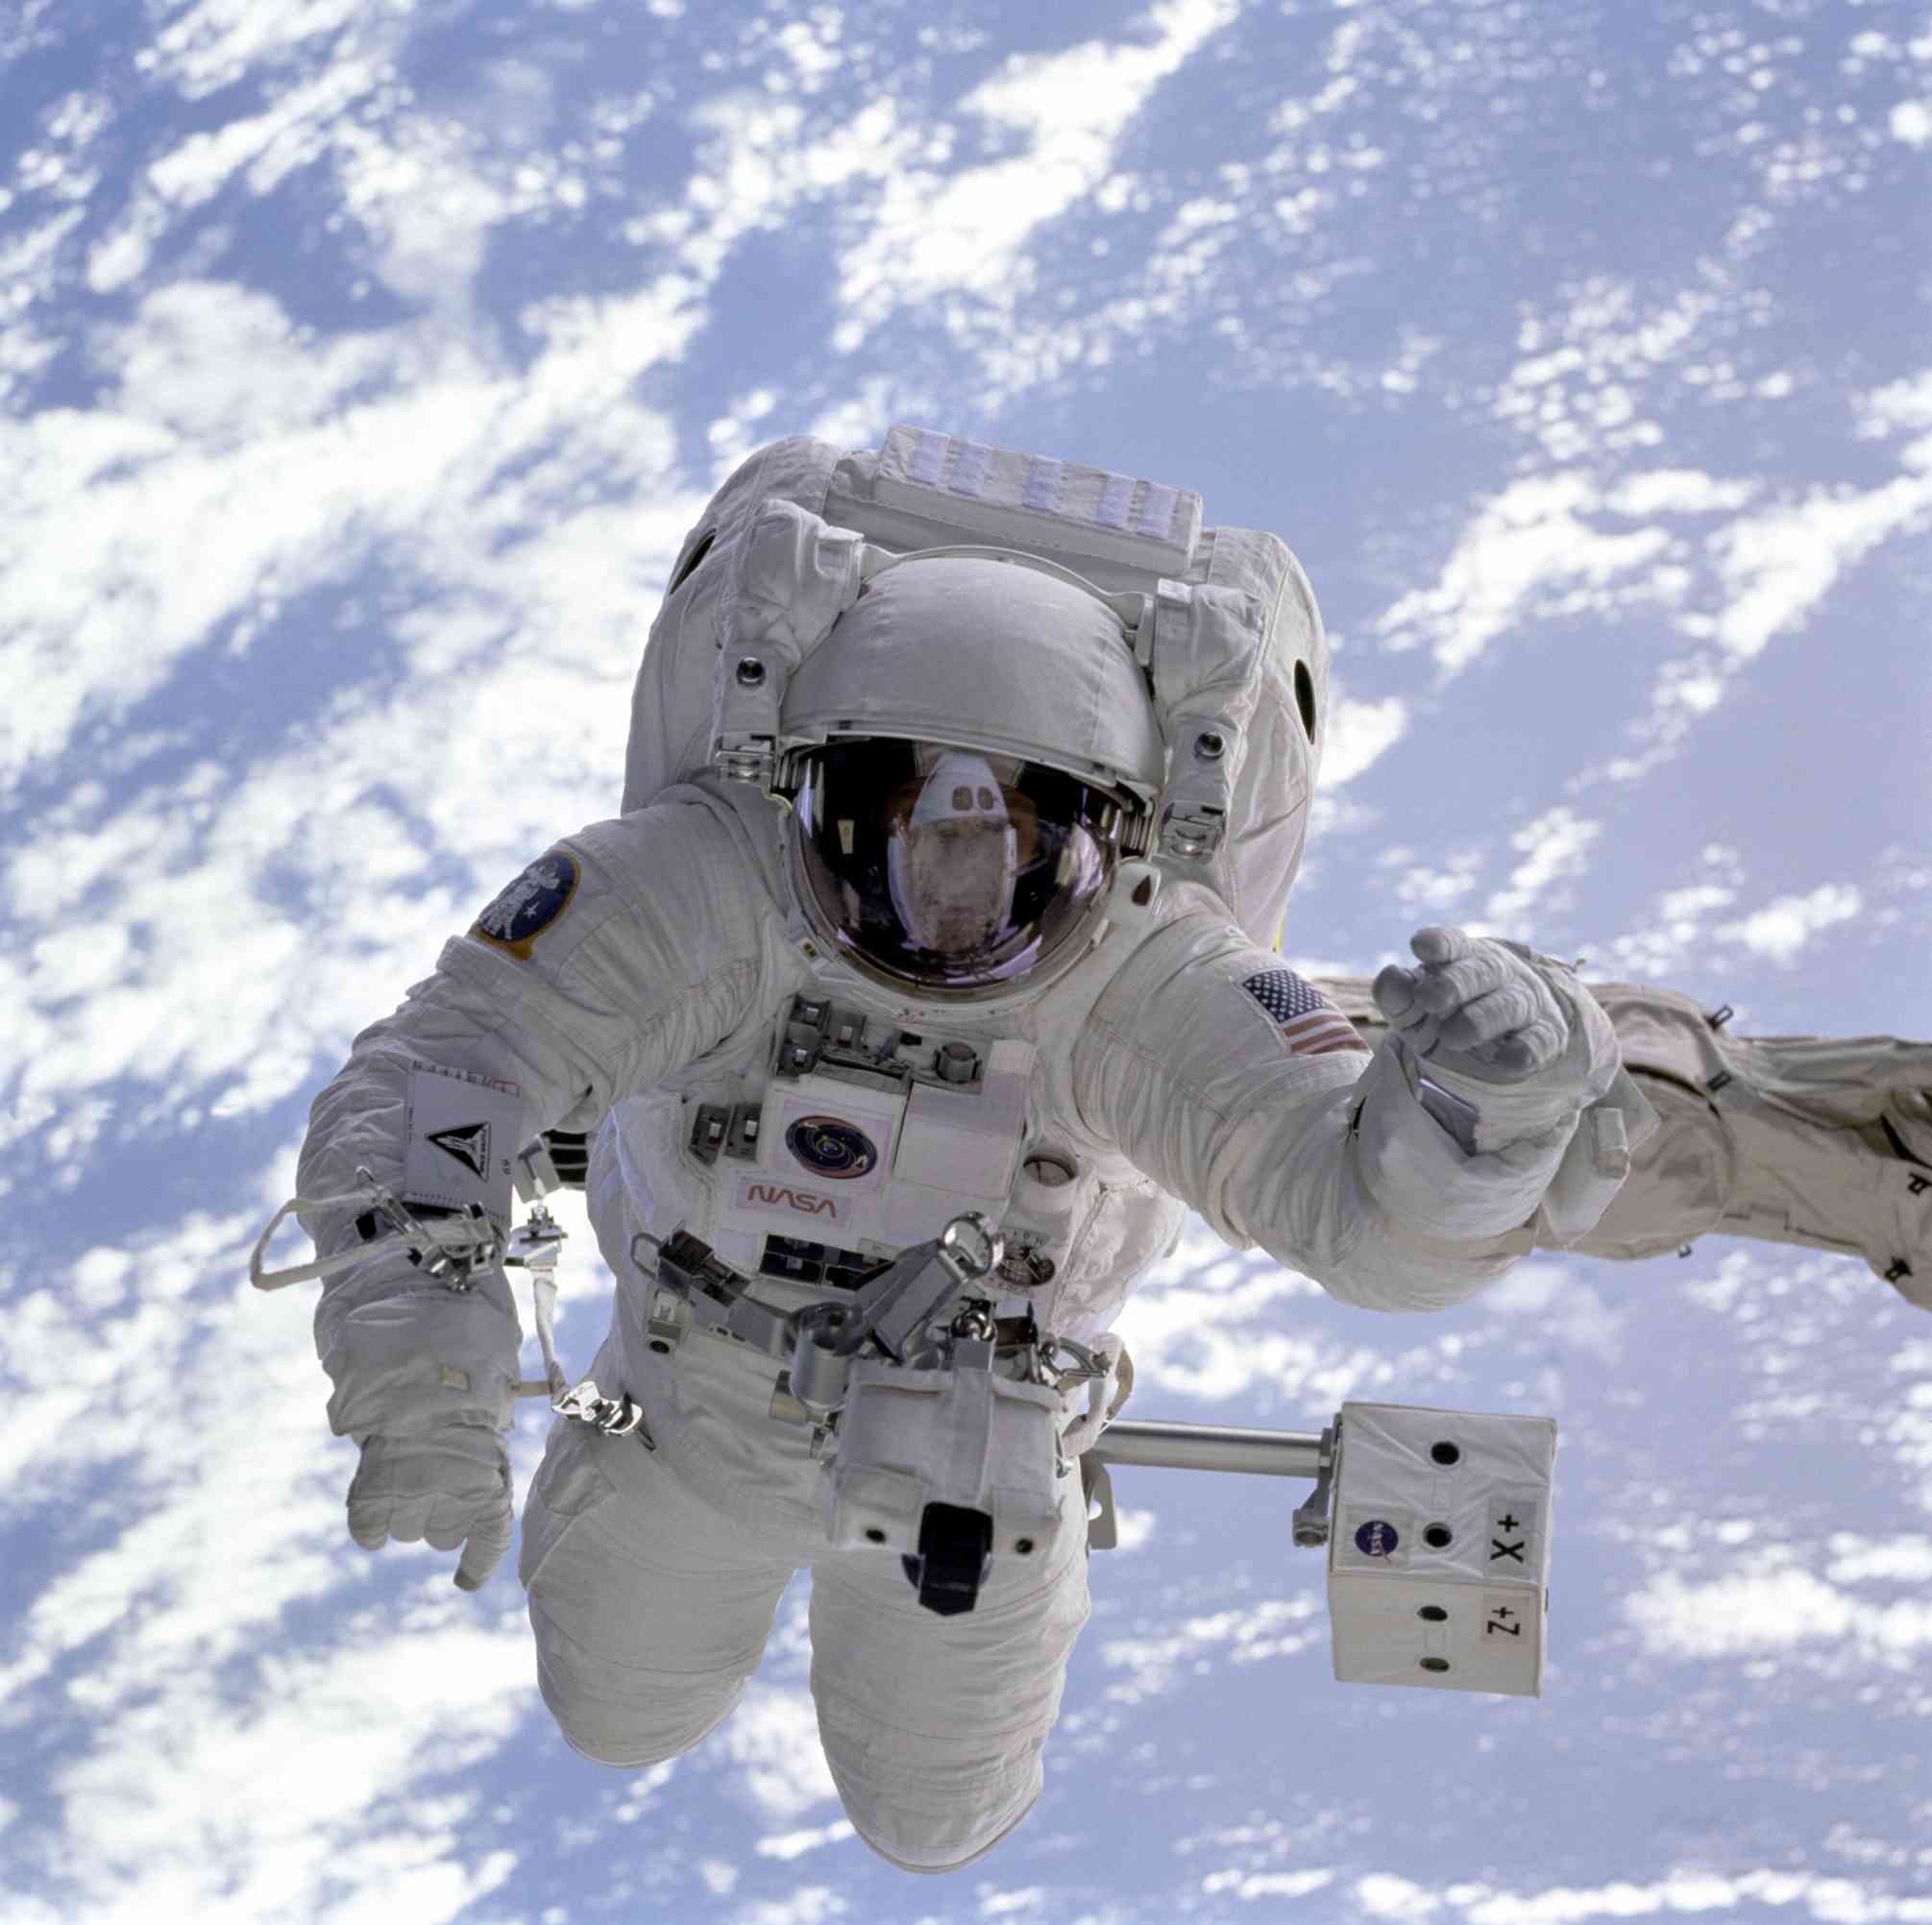 Αστροναύτης σε διαστημικό περίπατο ("space walk") (Photograph by Pexels)